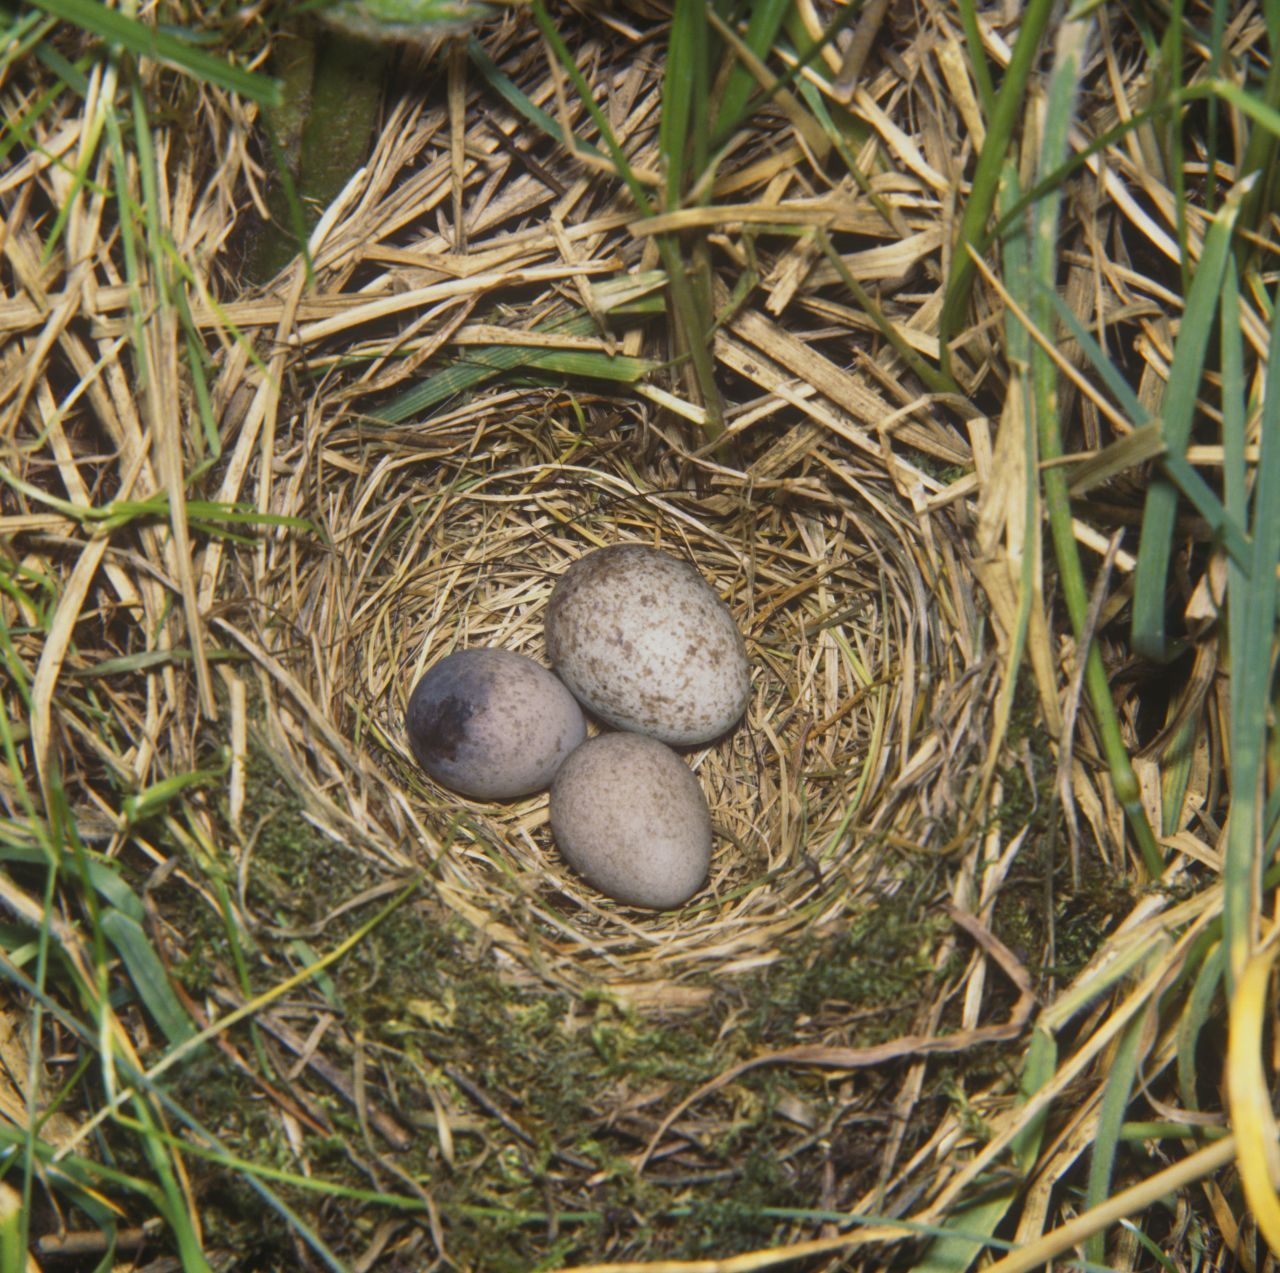 Schwindel-Ei: Kuckucke legen ihre Eier anderen Vogelarten ins Nest. Besonders bei Arten, deren Eier aussehen, wie ihre eigenen, wie zum Beispiel beim Wiesenpieper.